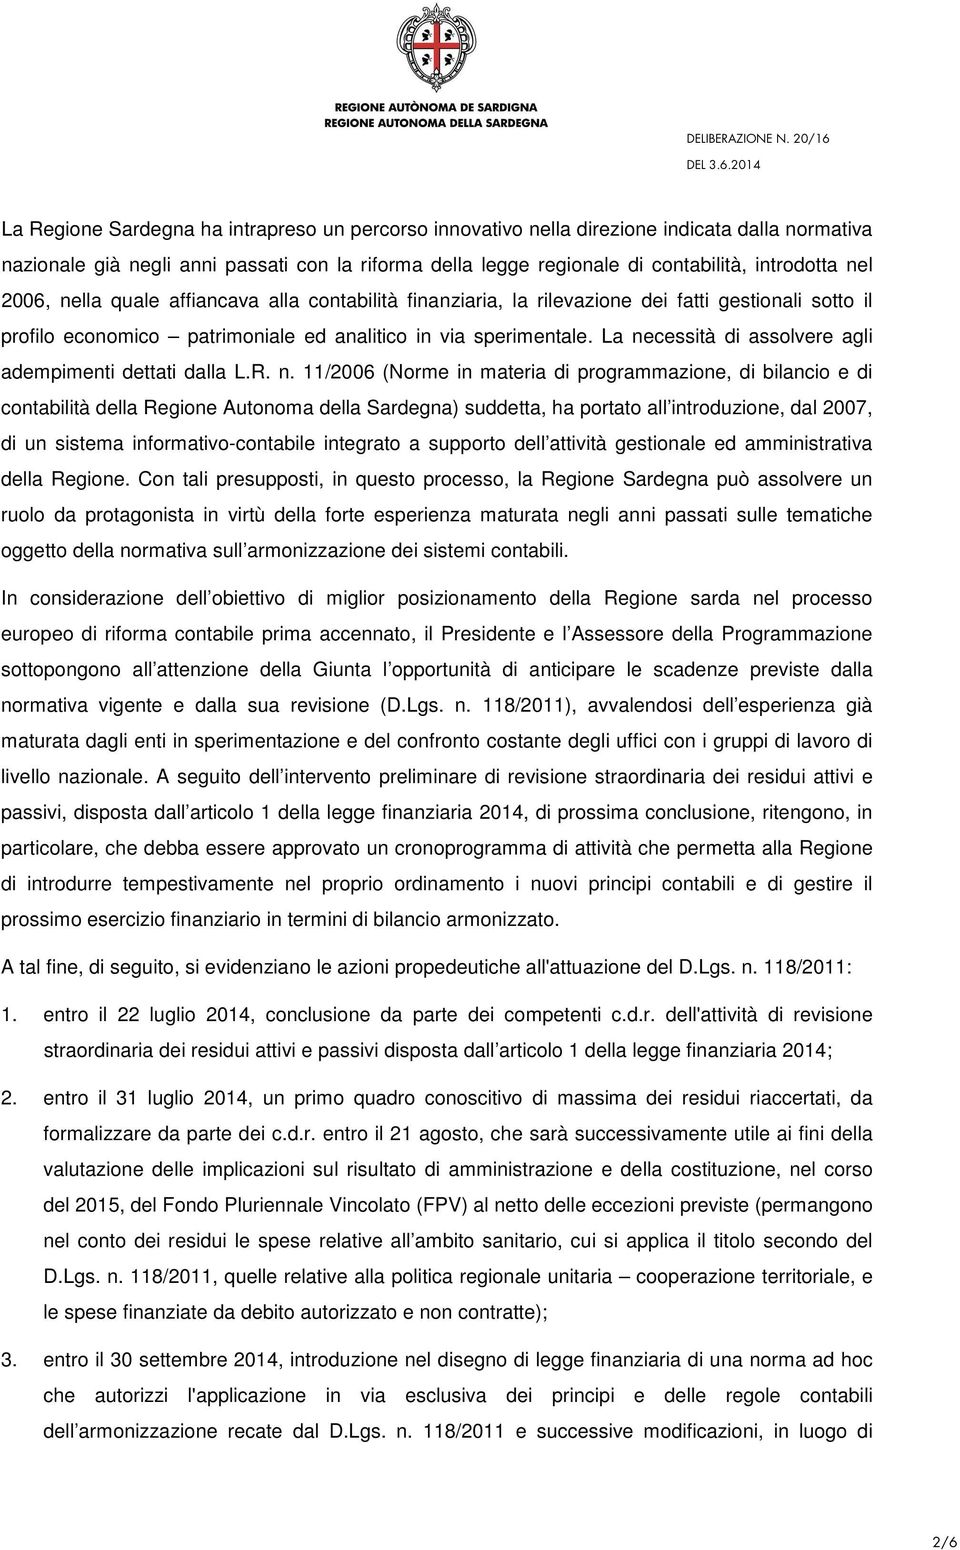 La necessità di assolvere agli adempimenti dettati dalla L.R. n. 11/2006 (Norme in materia di programmazione, di bilancio e di contabilità della Regione Autonoma della Sardegna) suddetta, ha portato